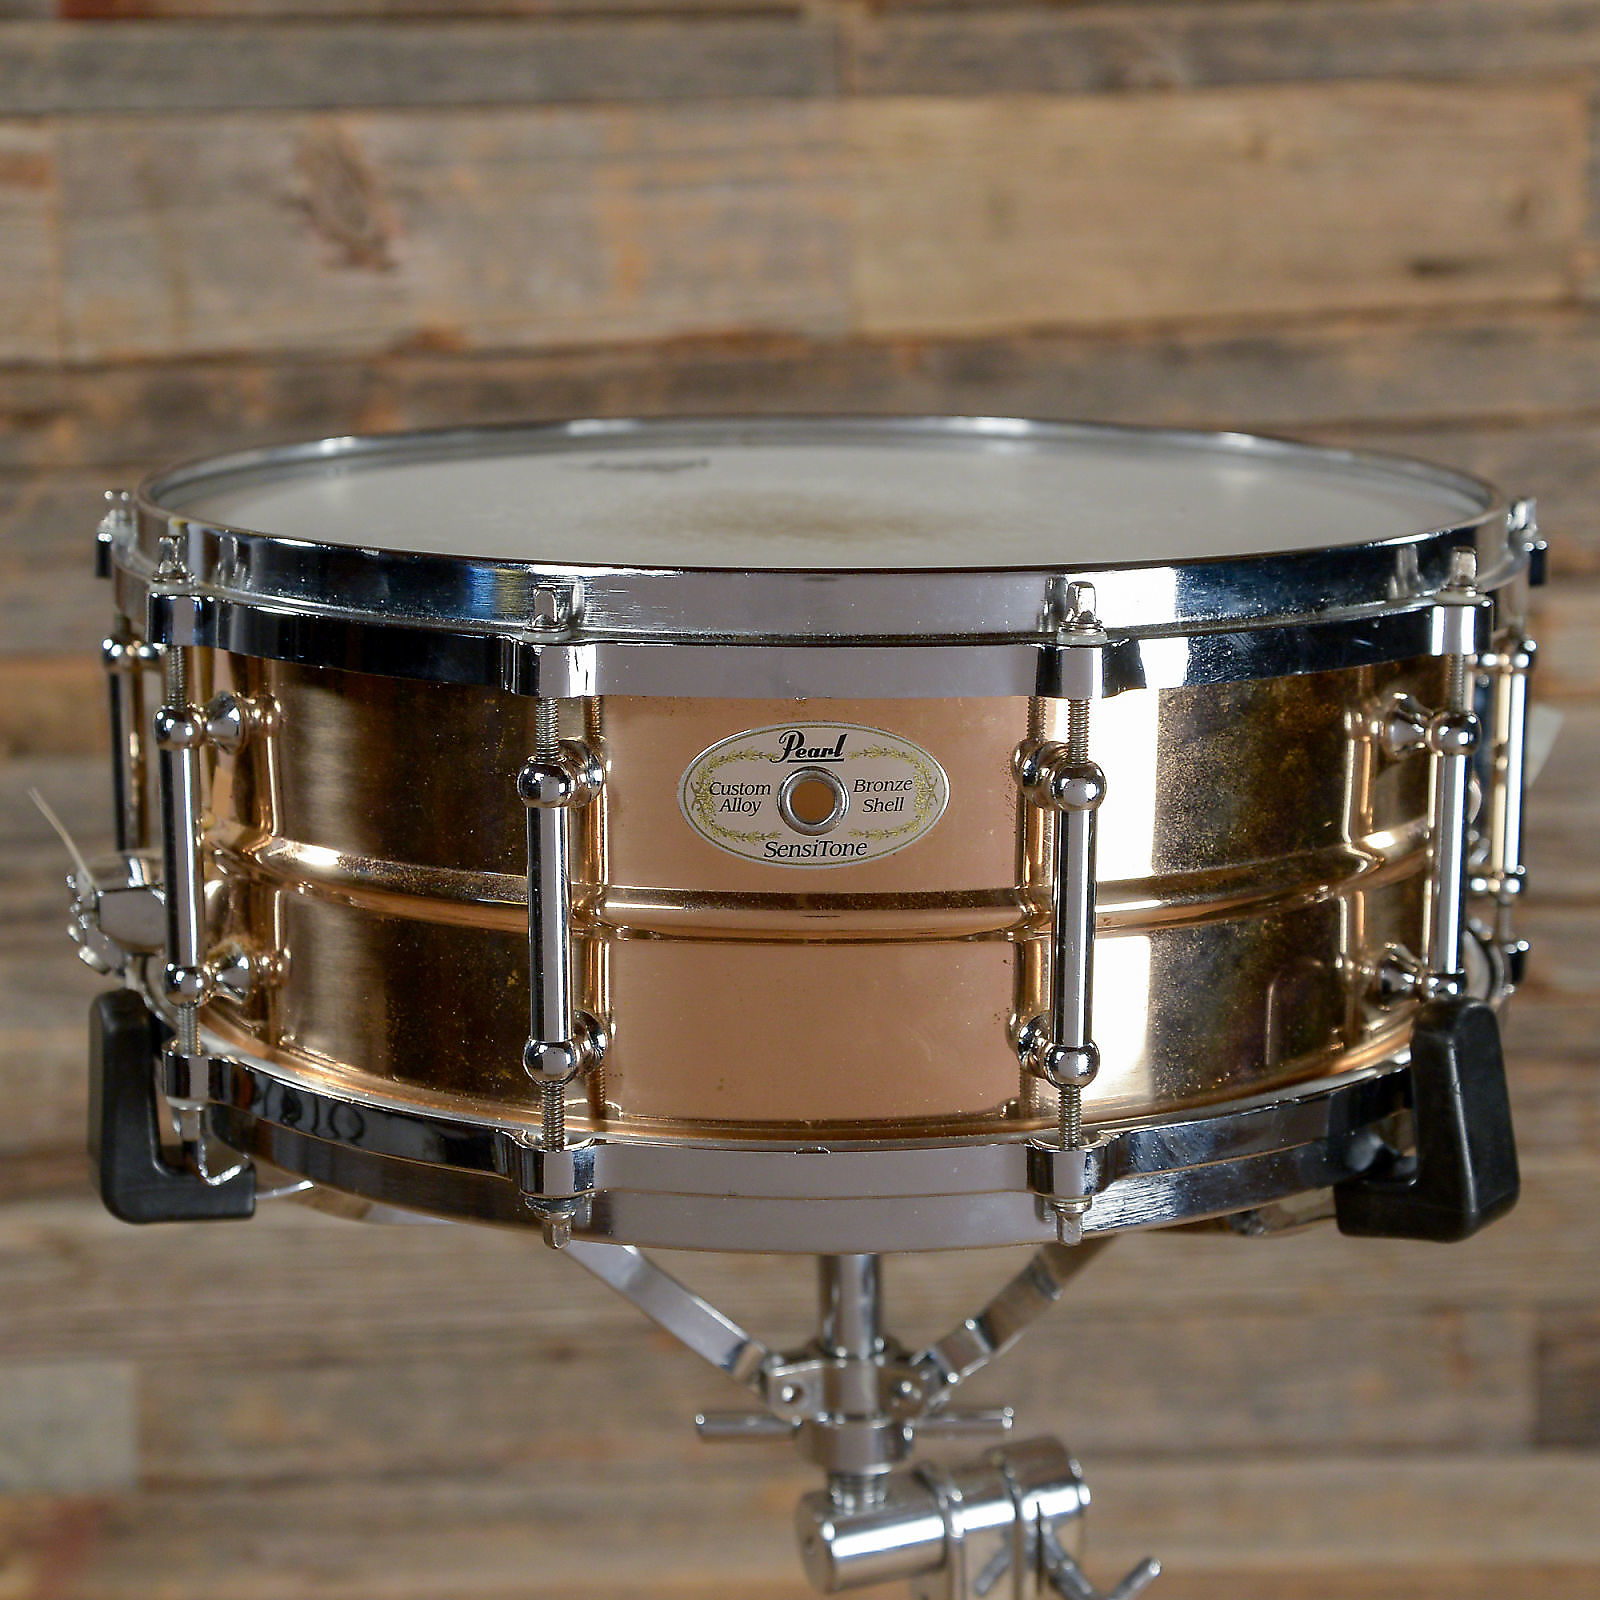 Pearl 5x14 Sensitone Bronze Snare Drum w/ Tube Lugs